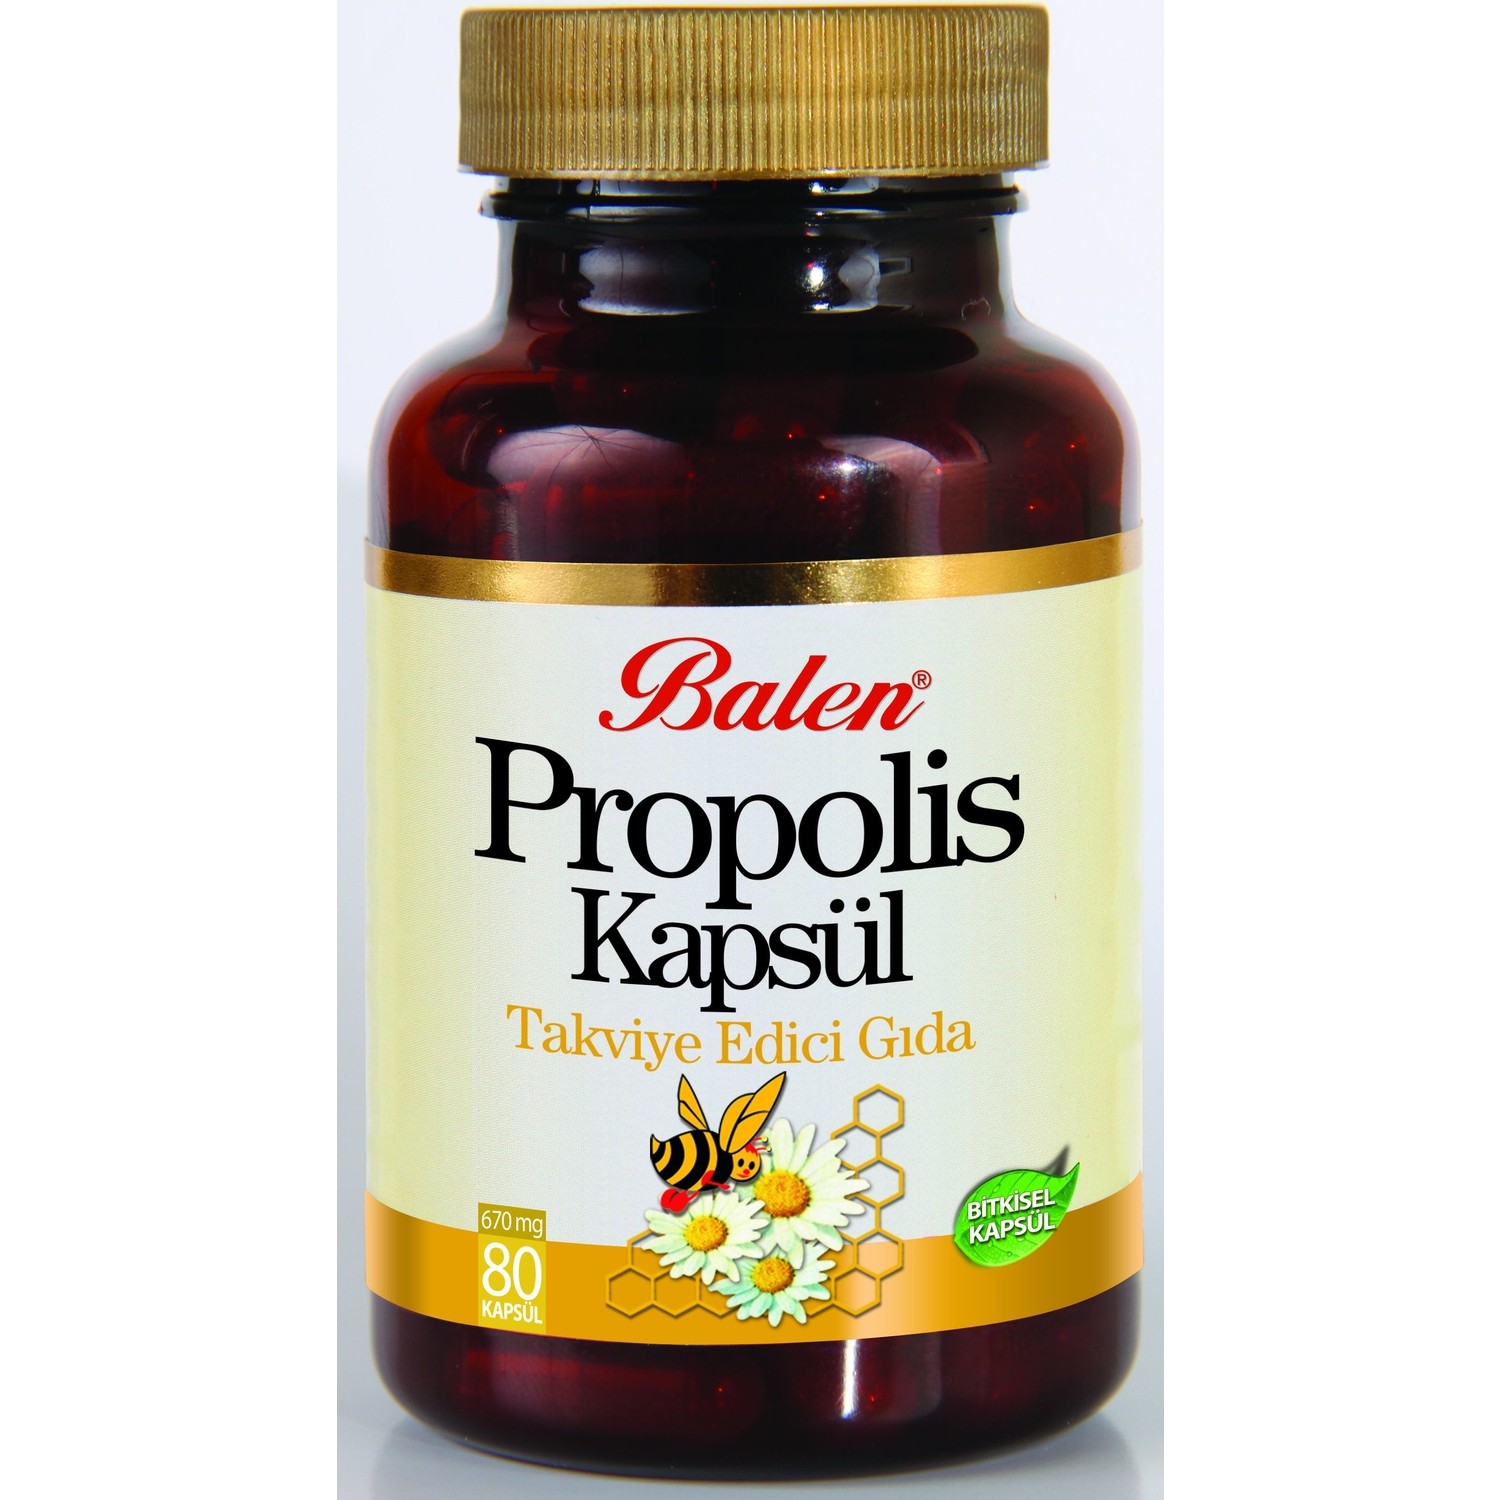 Пищевая добавка Balen Propolis 670 мг, 80 капсул supplementary order fees $1